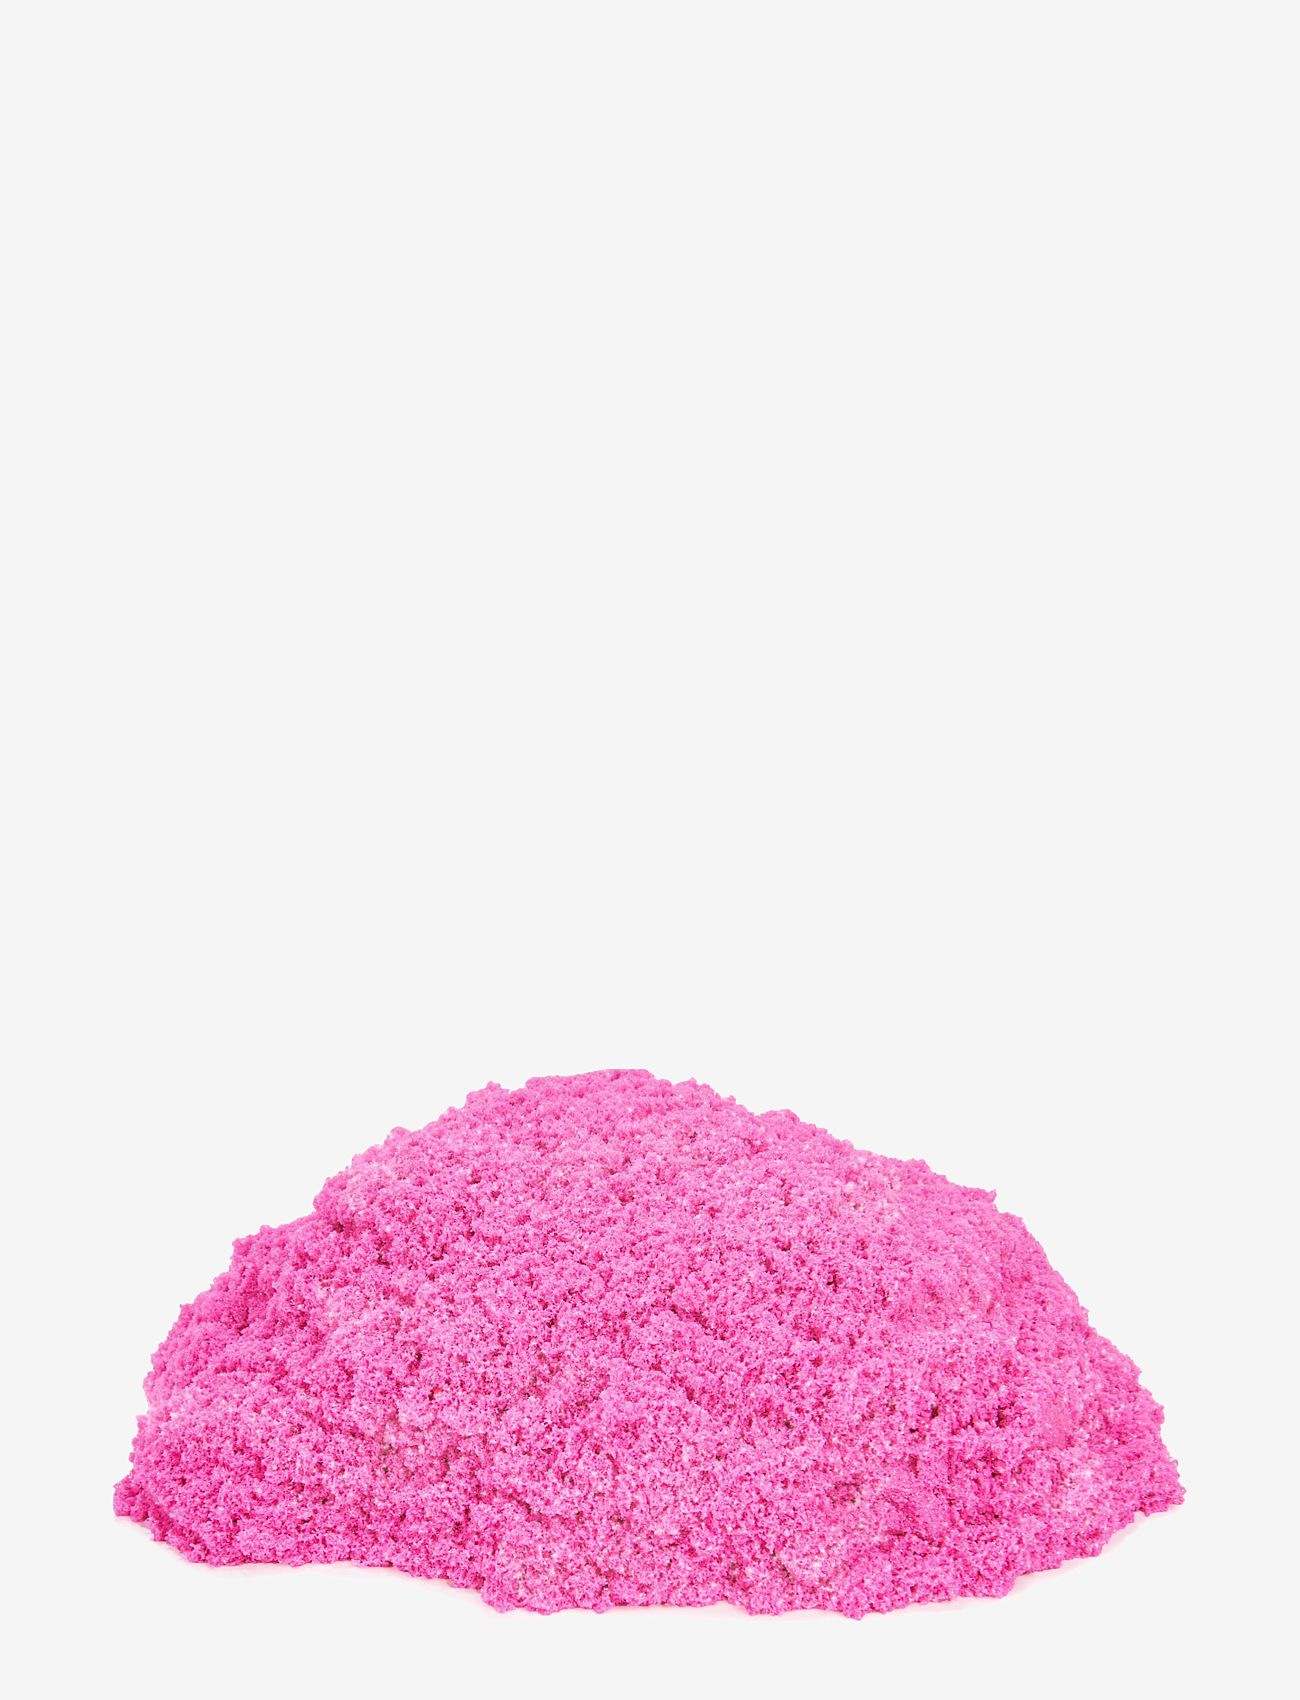 Kinetic Sand - Kinetic Sand Glitter Sand Pink - slim - multi - 1